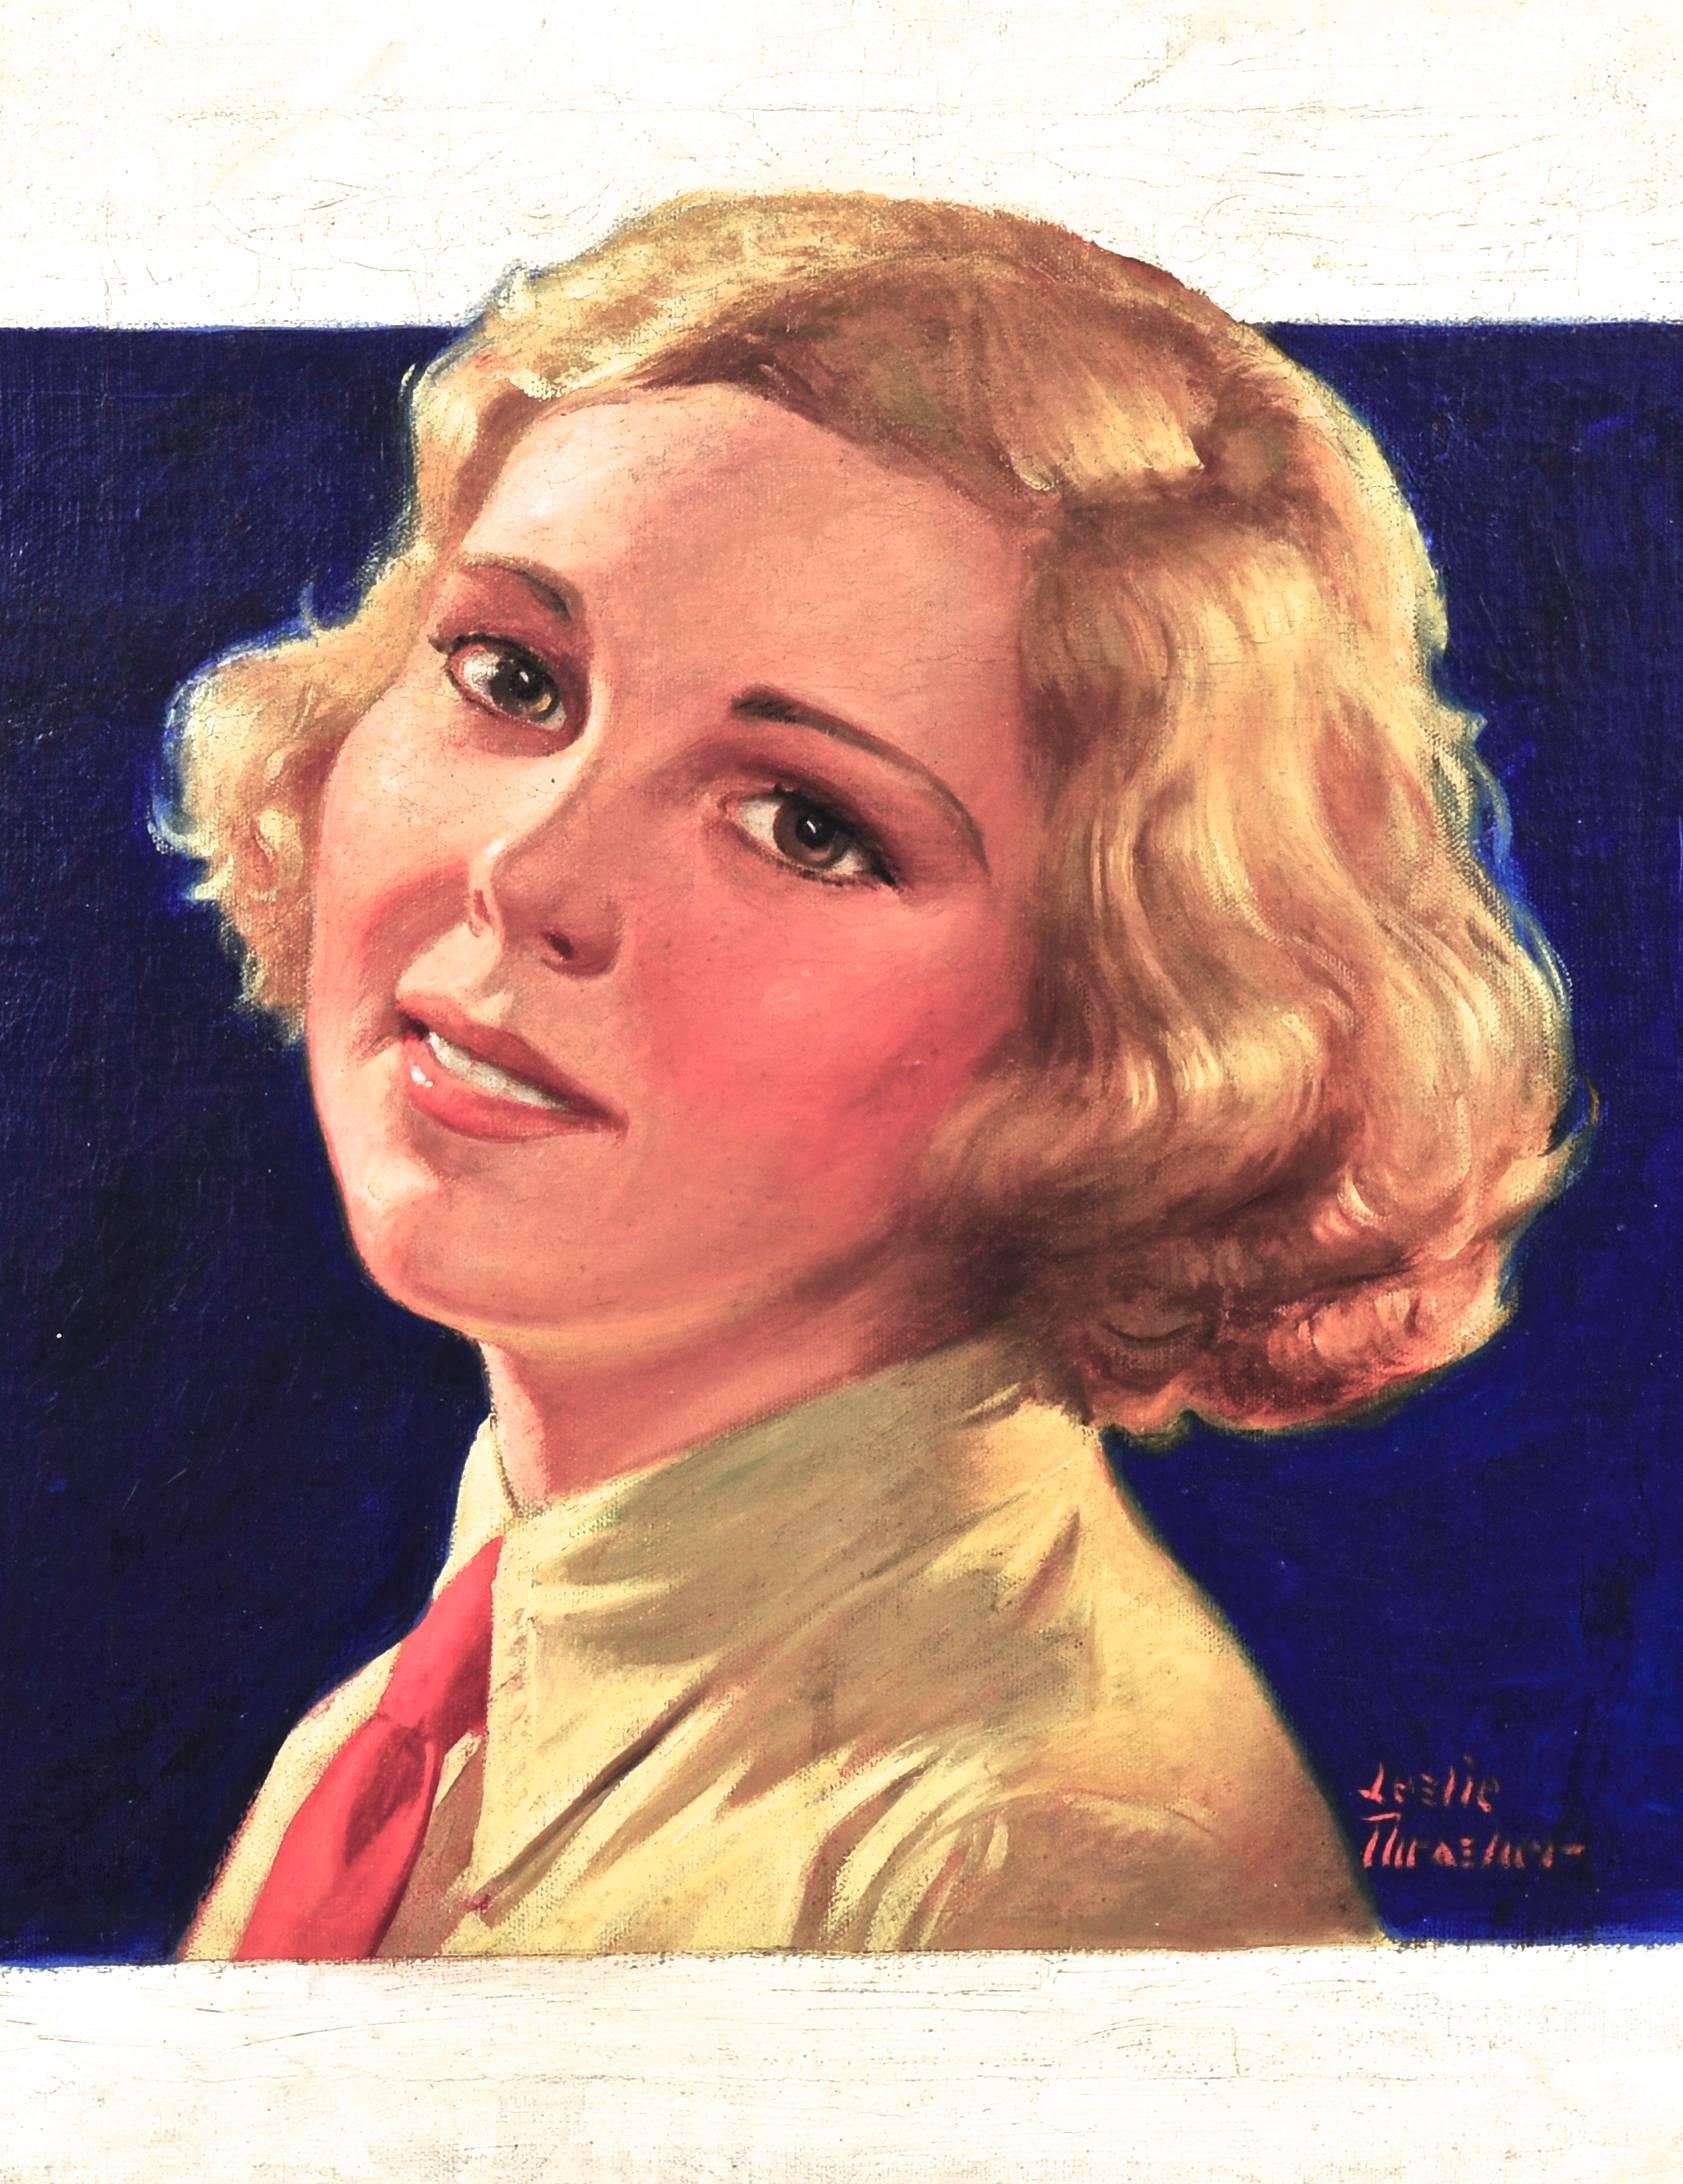 La couverture du magazine Liberty, 1 octobre 1932